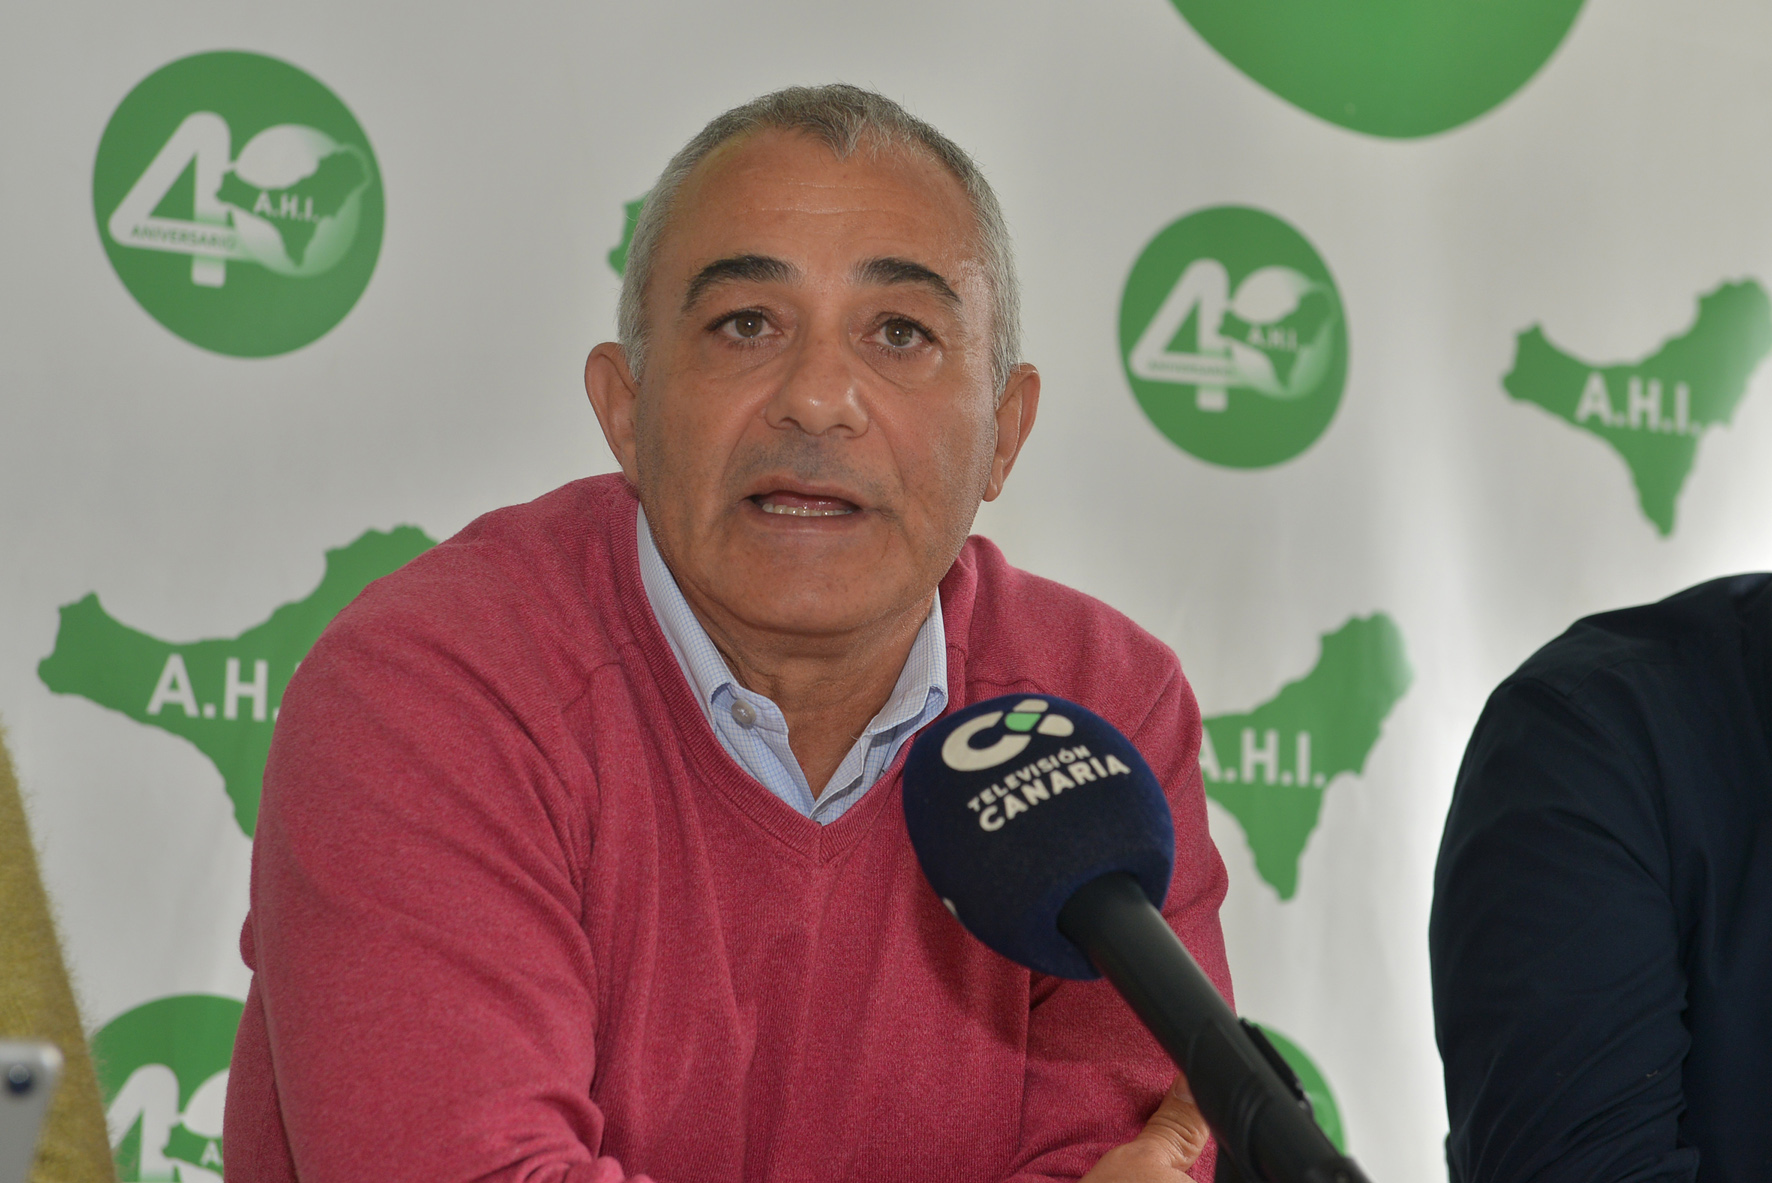 AHI firmará un acuerdo electoral con Coalición Canaria el próximo miércoles